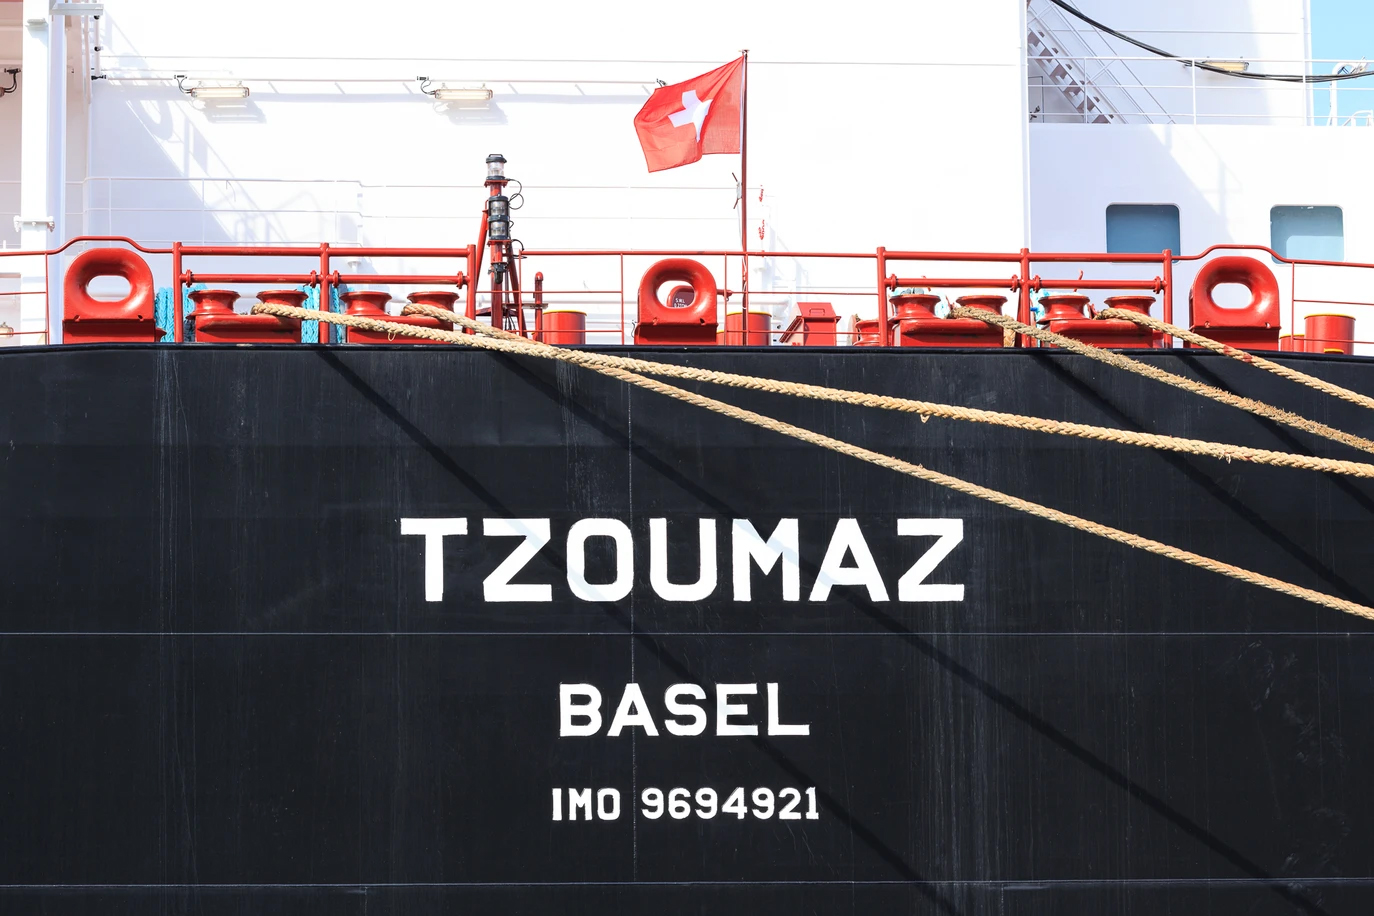 Das Schiff Tzoumaz